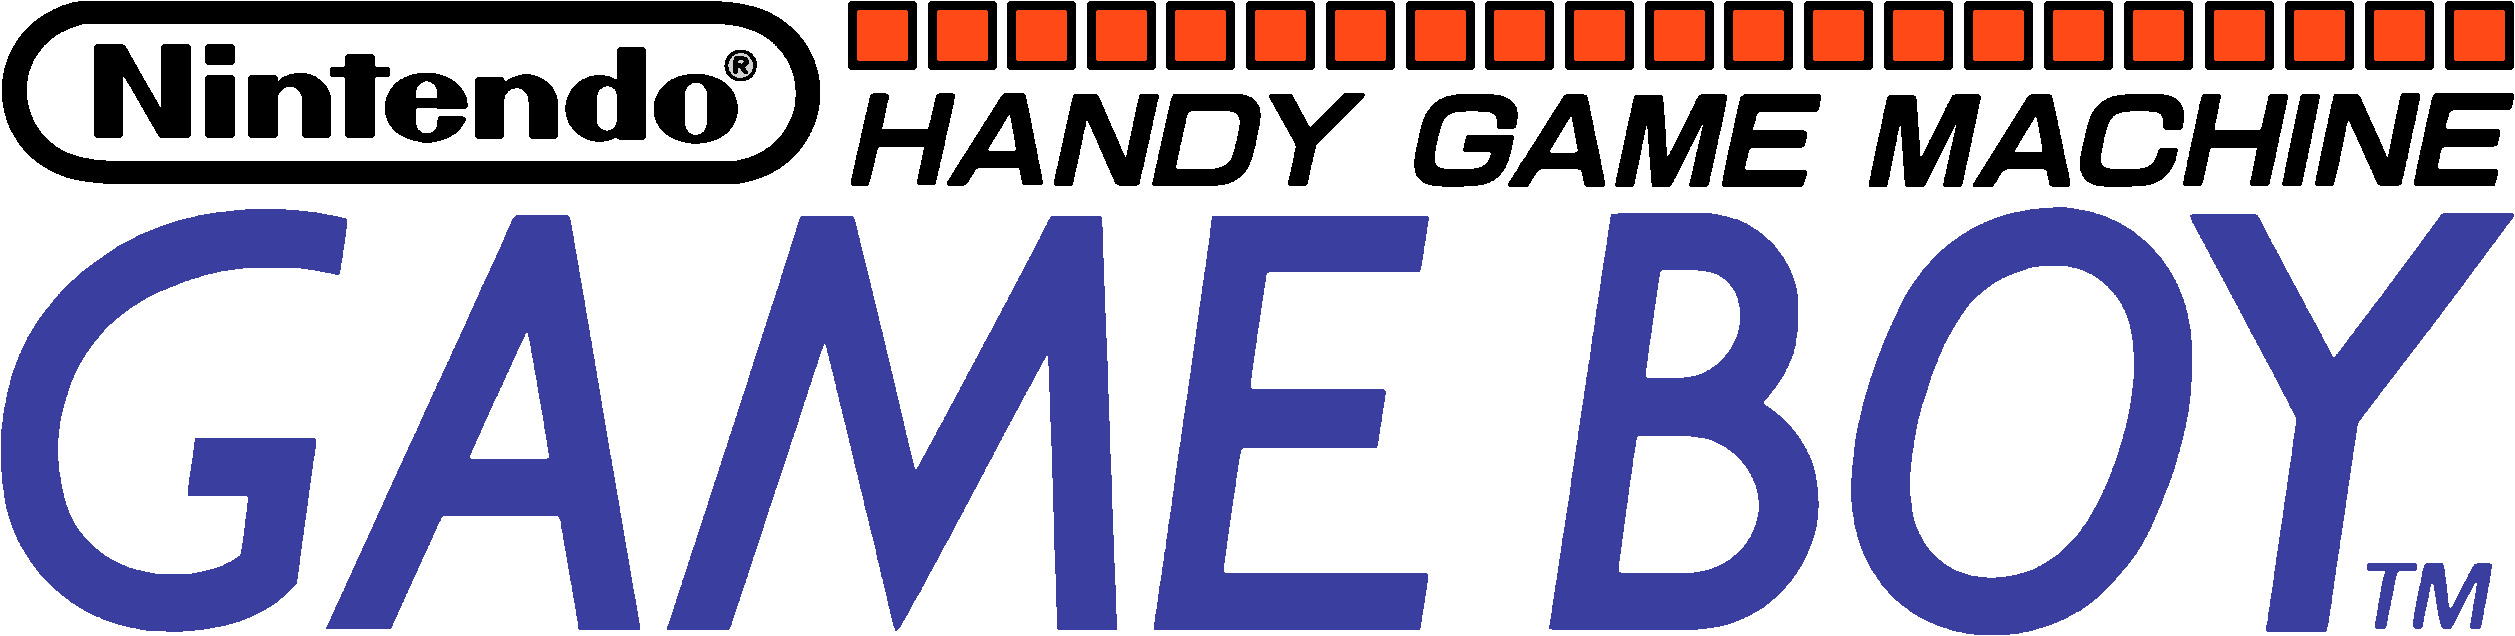 Nintendo Game Boy Logos